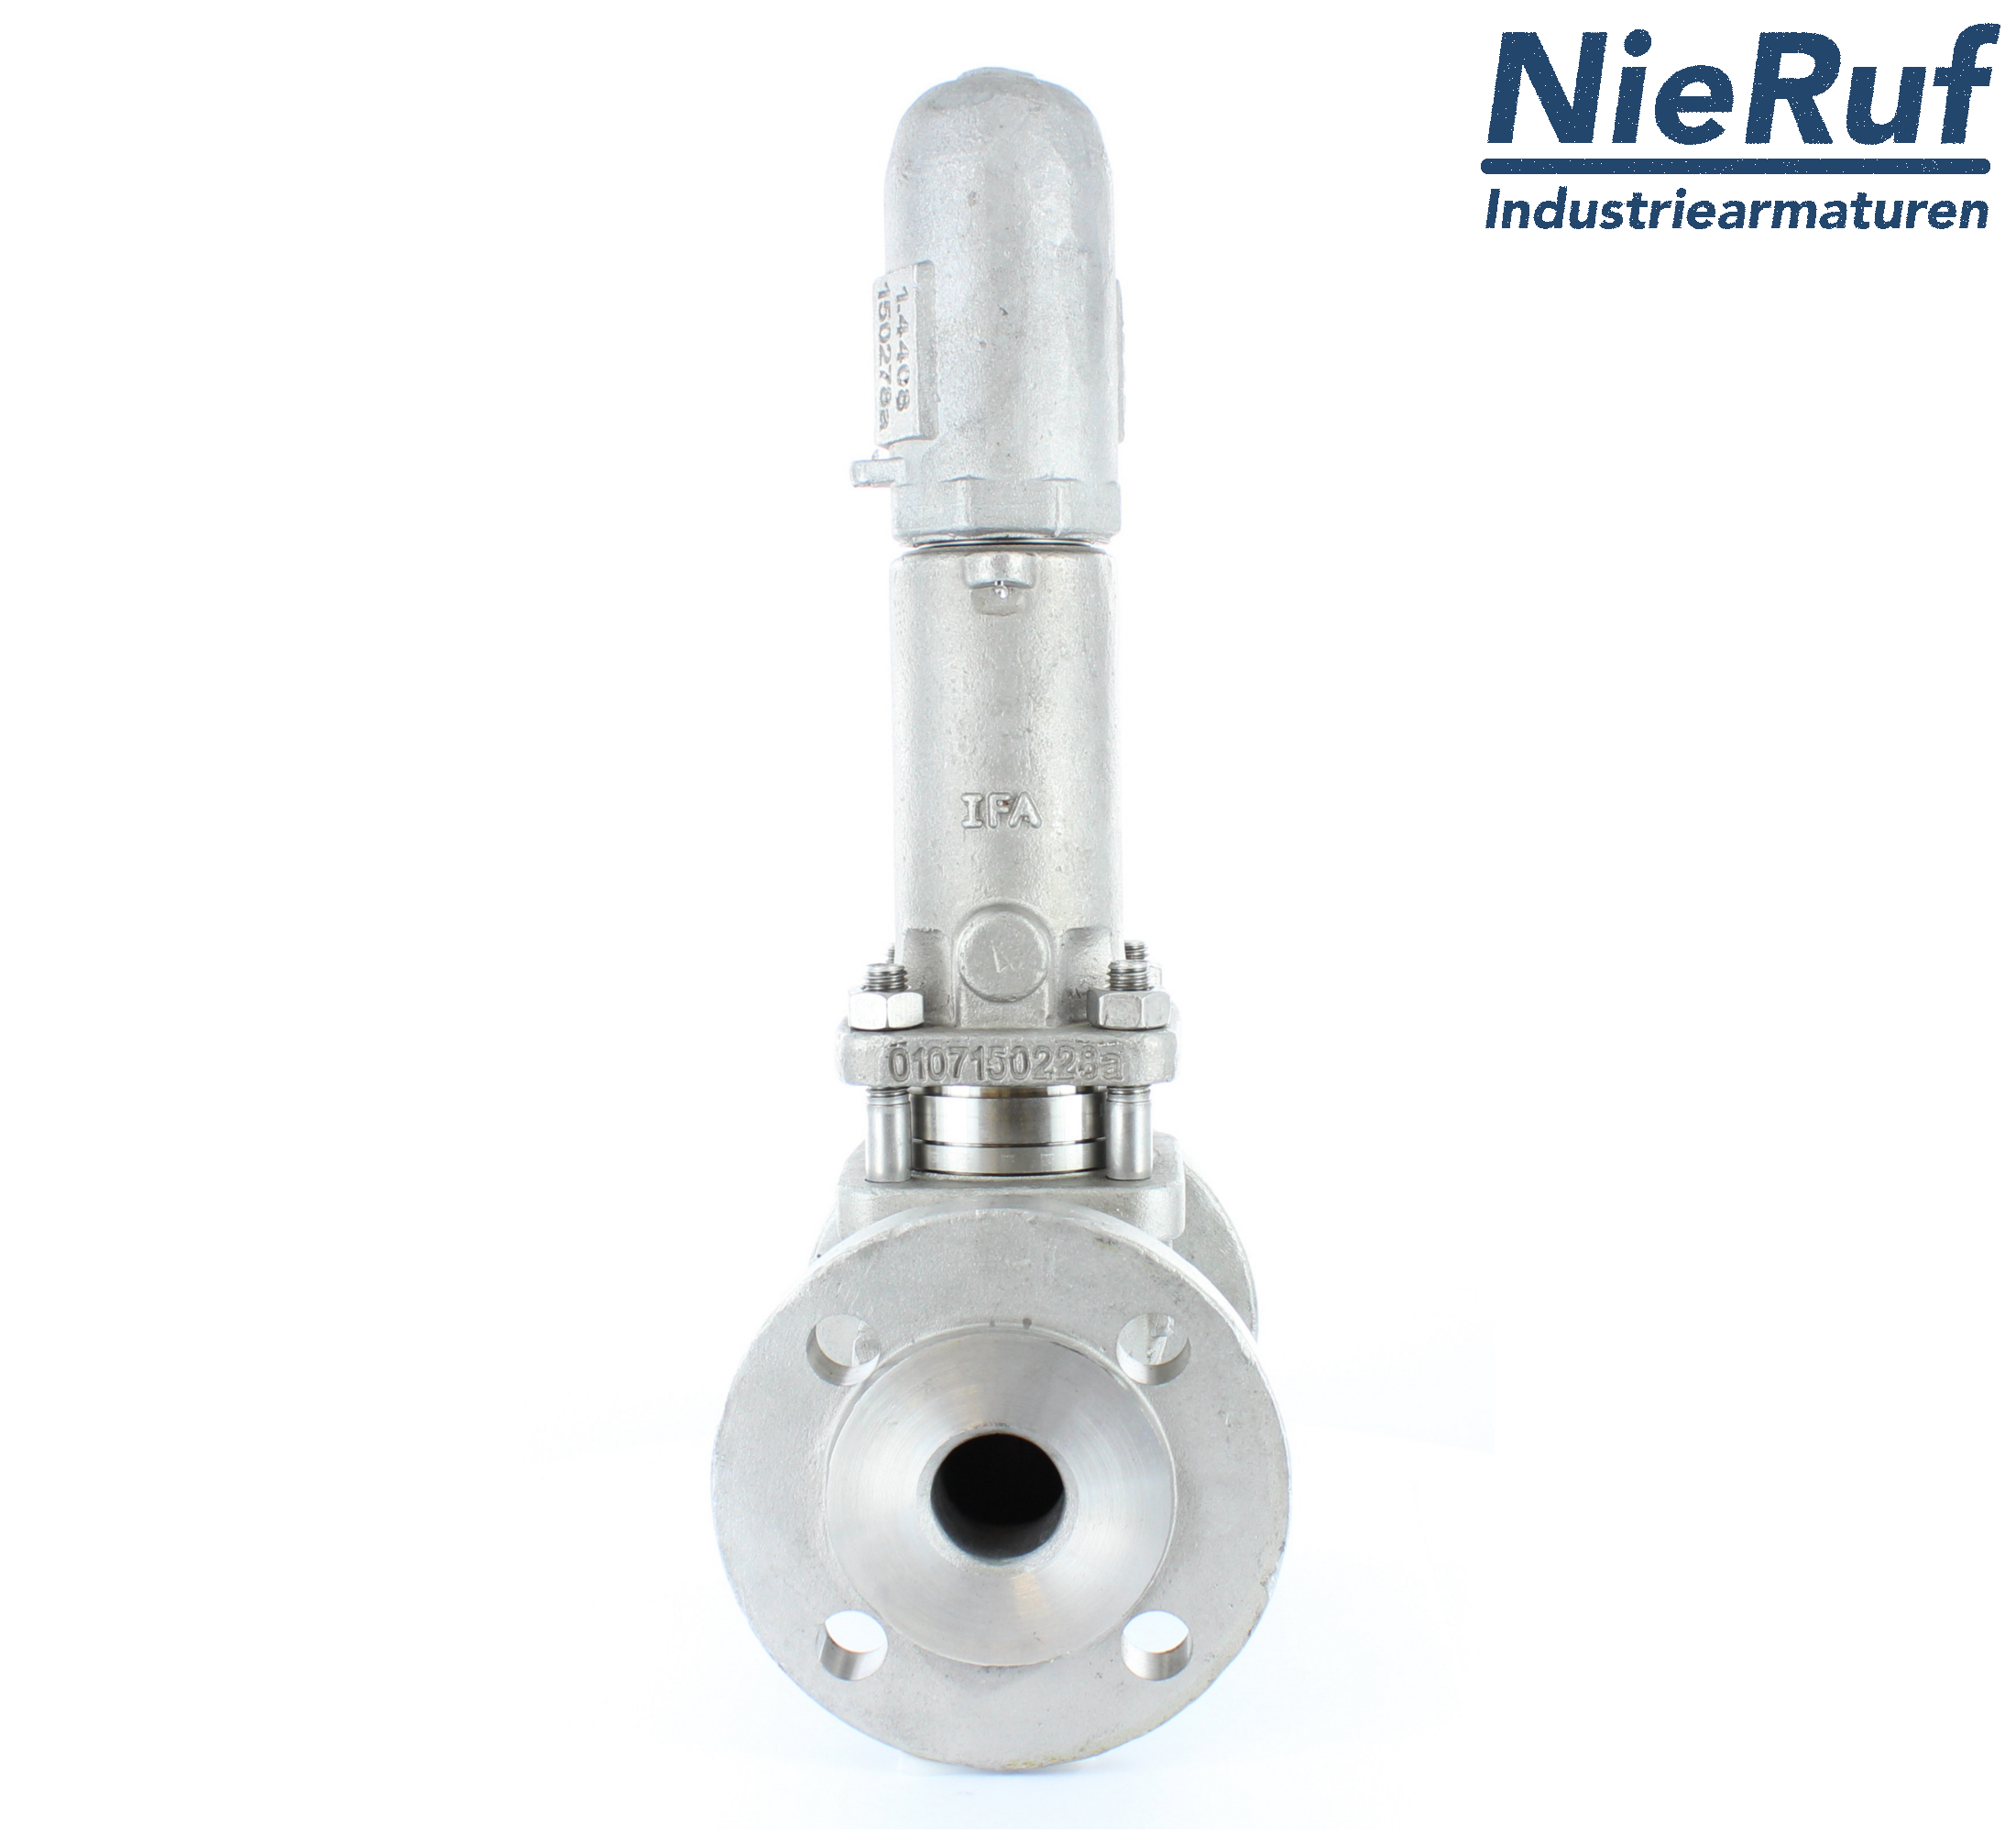 piston overflow valve DN 20 UV13 cast iron 1.0619+N 2,0 - 5,0 bar